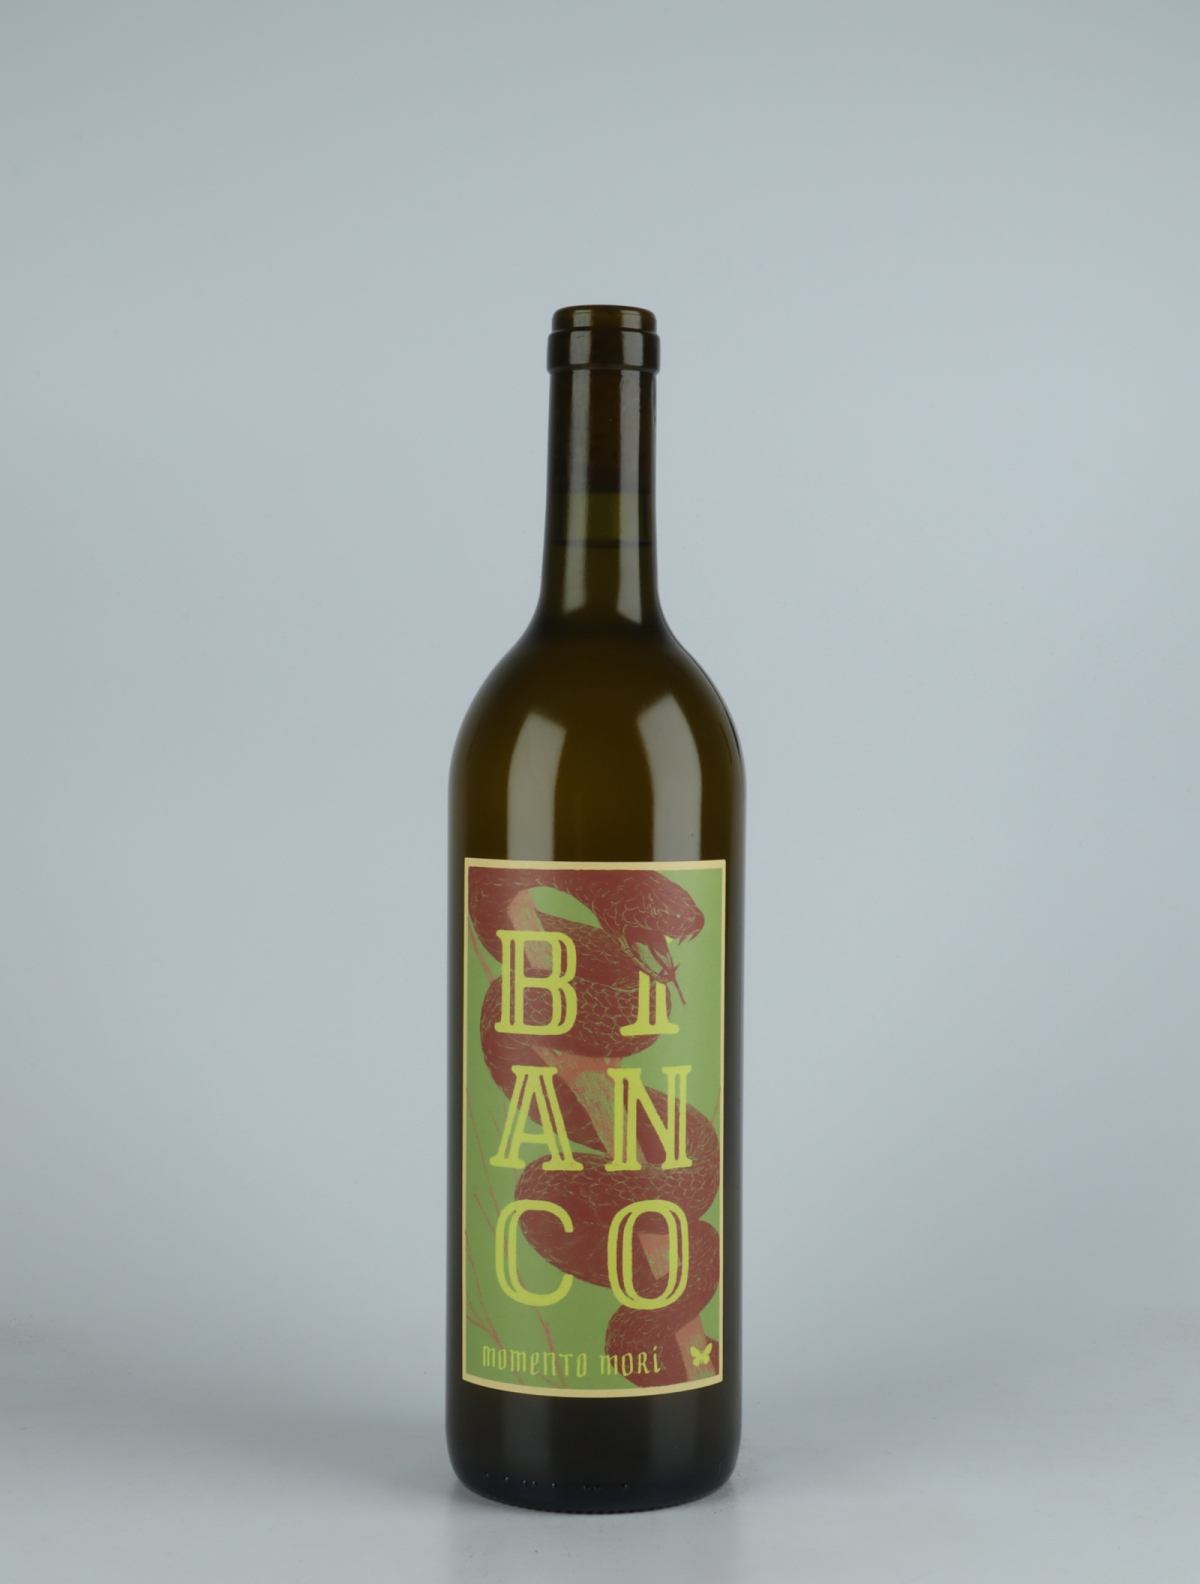 A bottle 2021 Bianco Orange wine from Momento Mori, Victoria in Australia